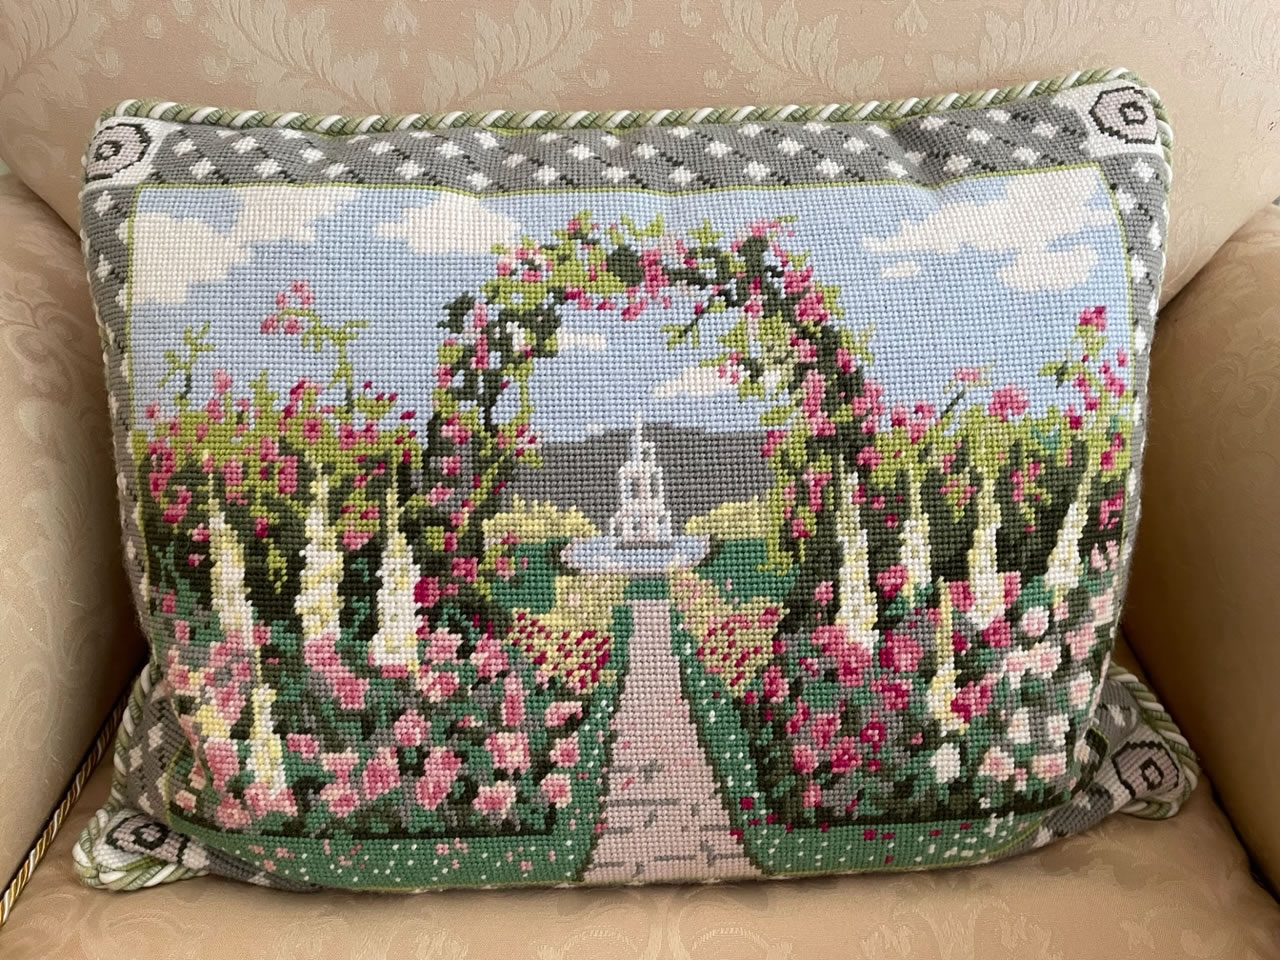 needlepoint cushion roses and hollyhocks